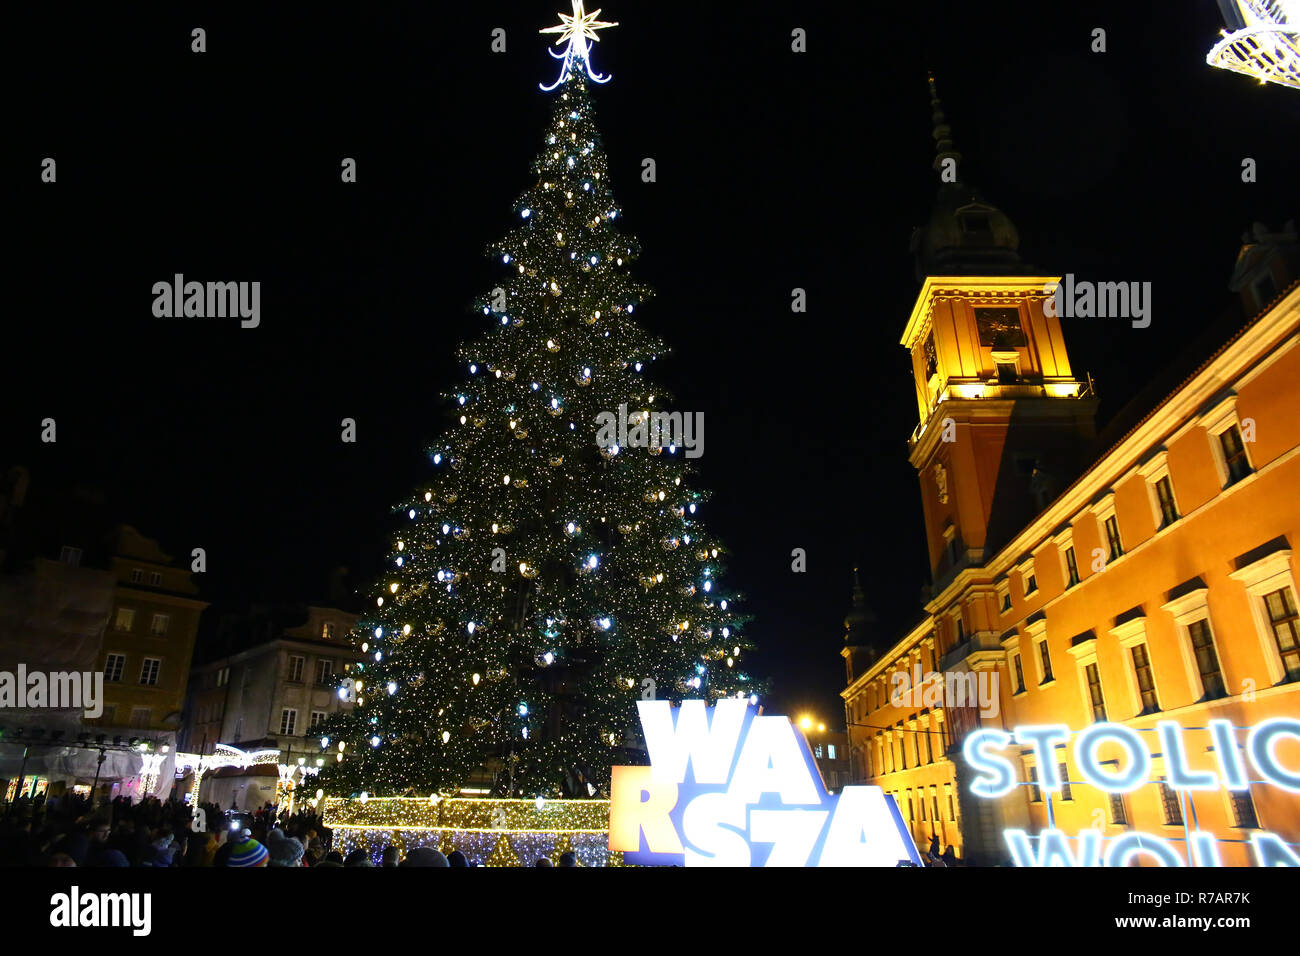 Pologne, Varsovie, 8 décembre 2018 : ville de Varsovie ouvre la saison de Noël avec l'éclairage public et la musique de Noël. Madeleine Ratz/Alamy Live News Banque D'Images